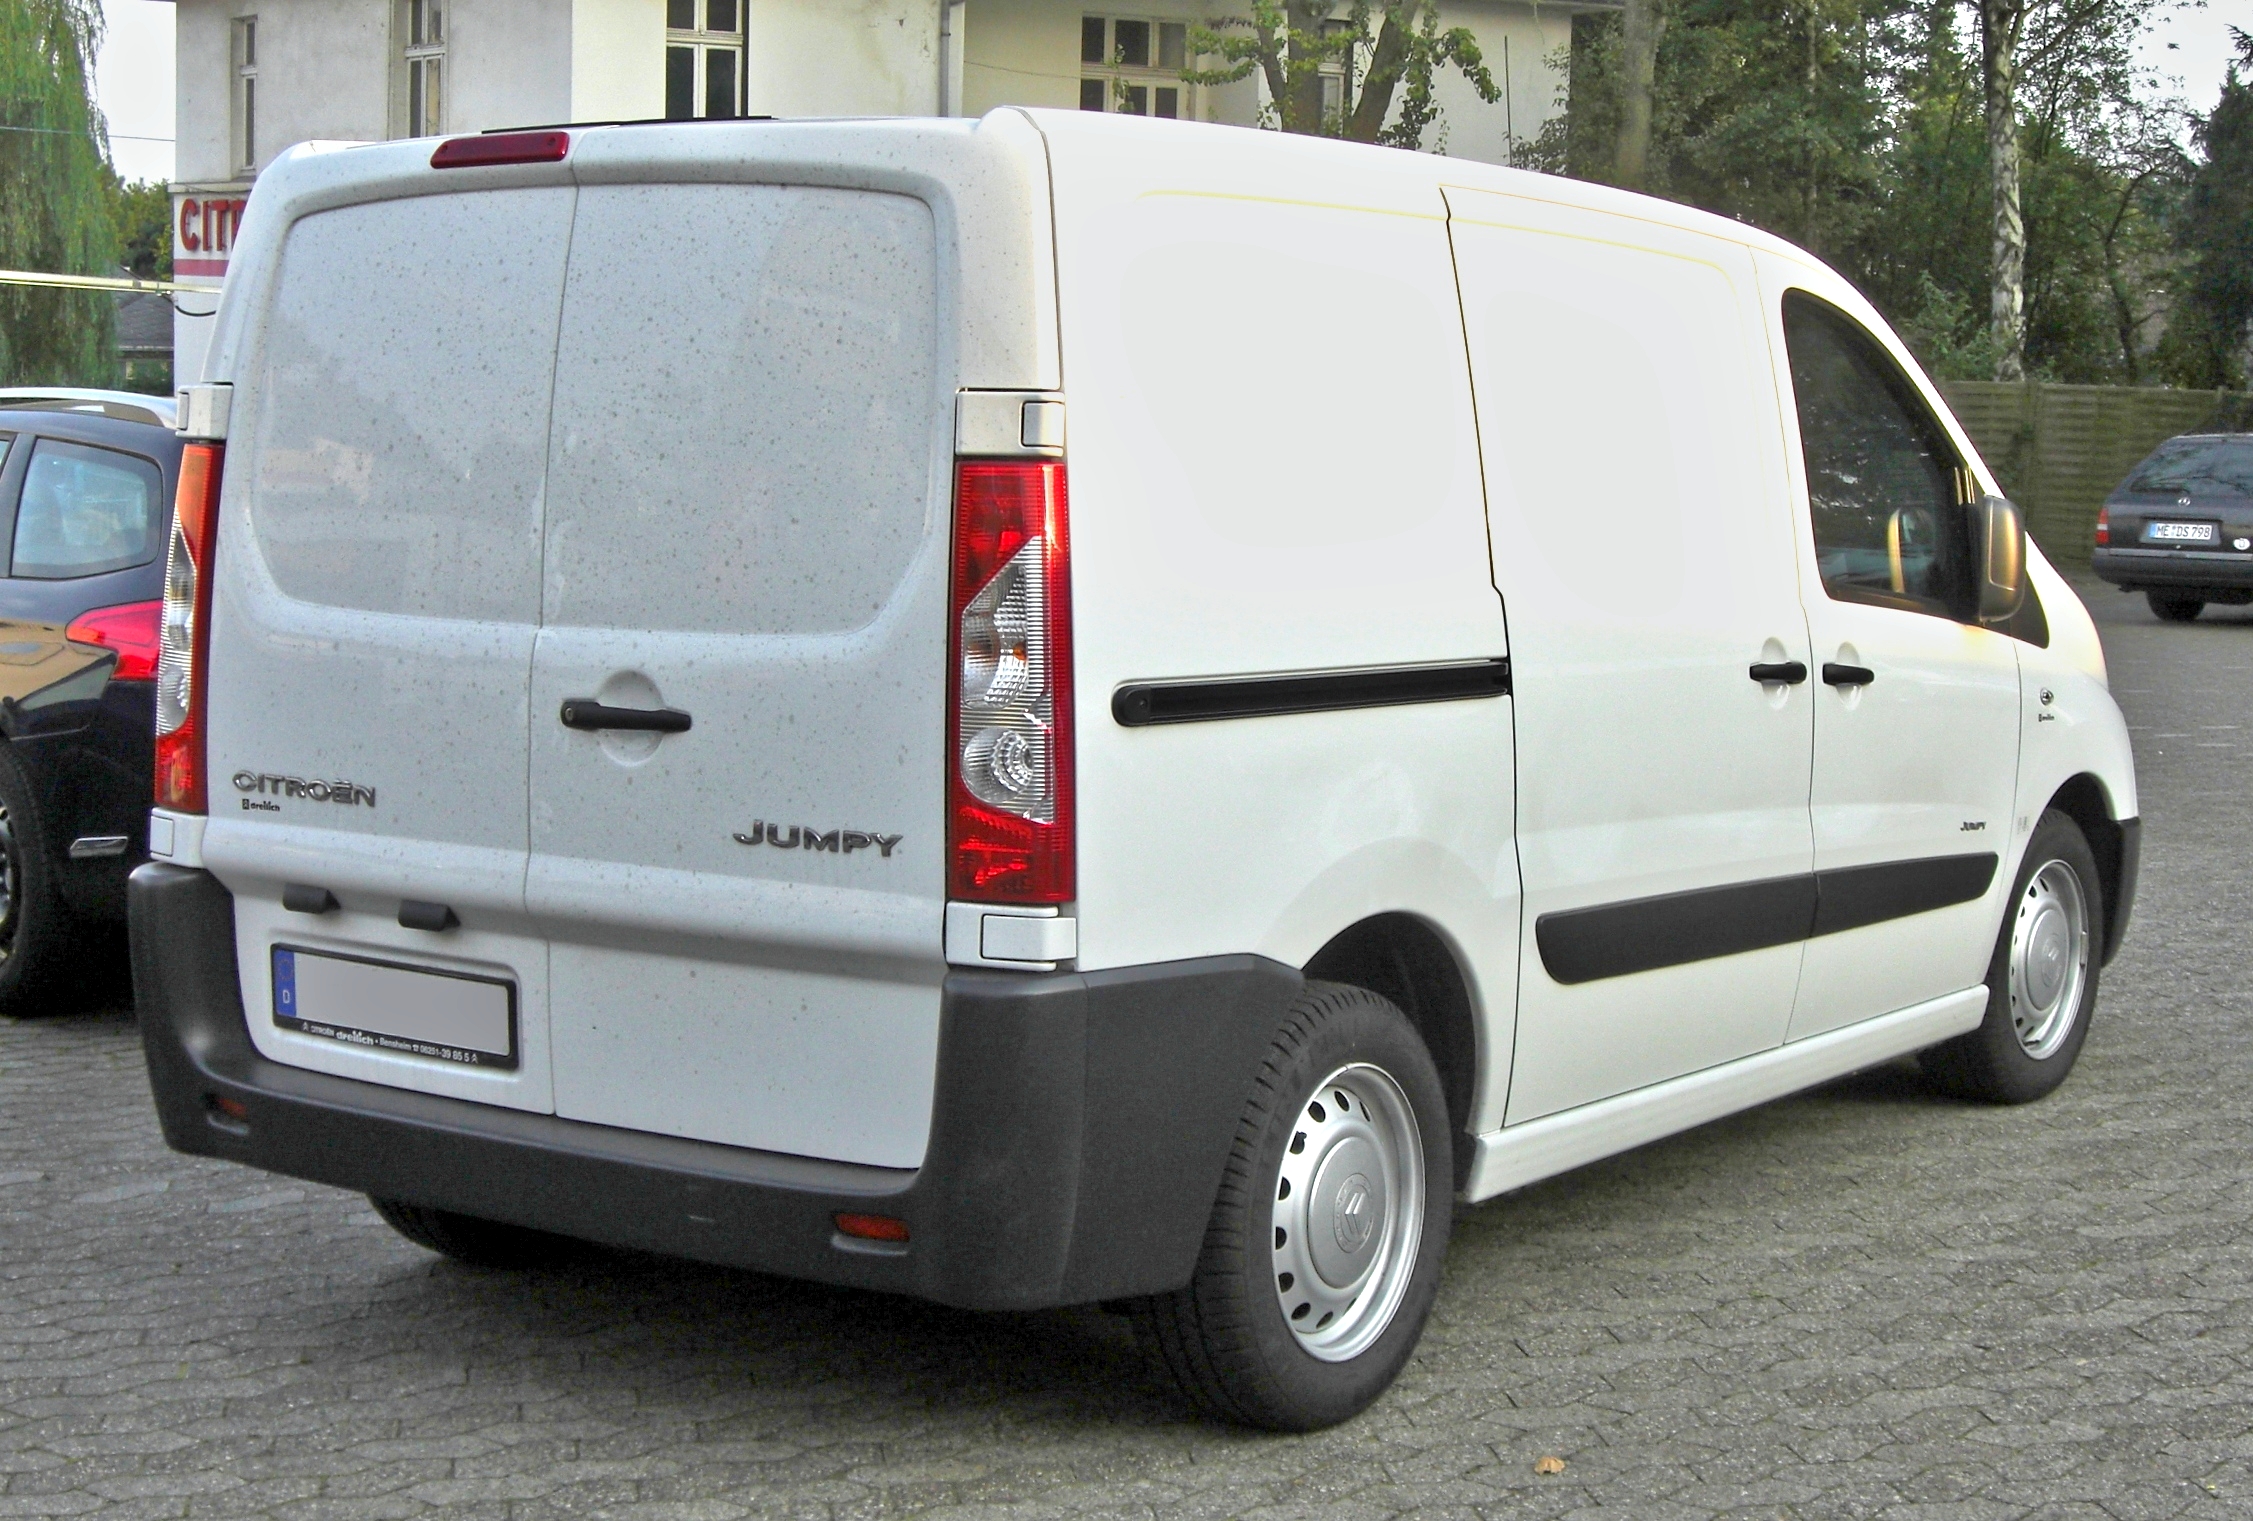 File:CitroënJumpy30062013.jpg - Wikipedia